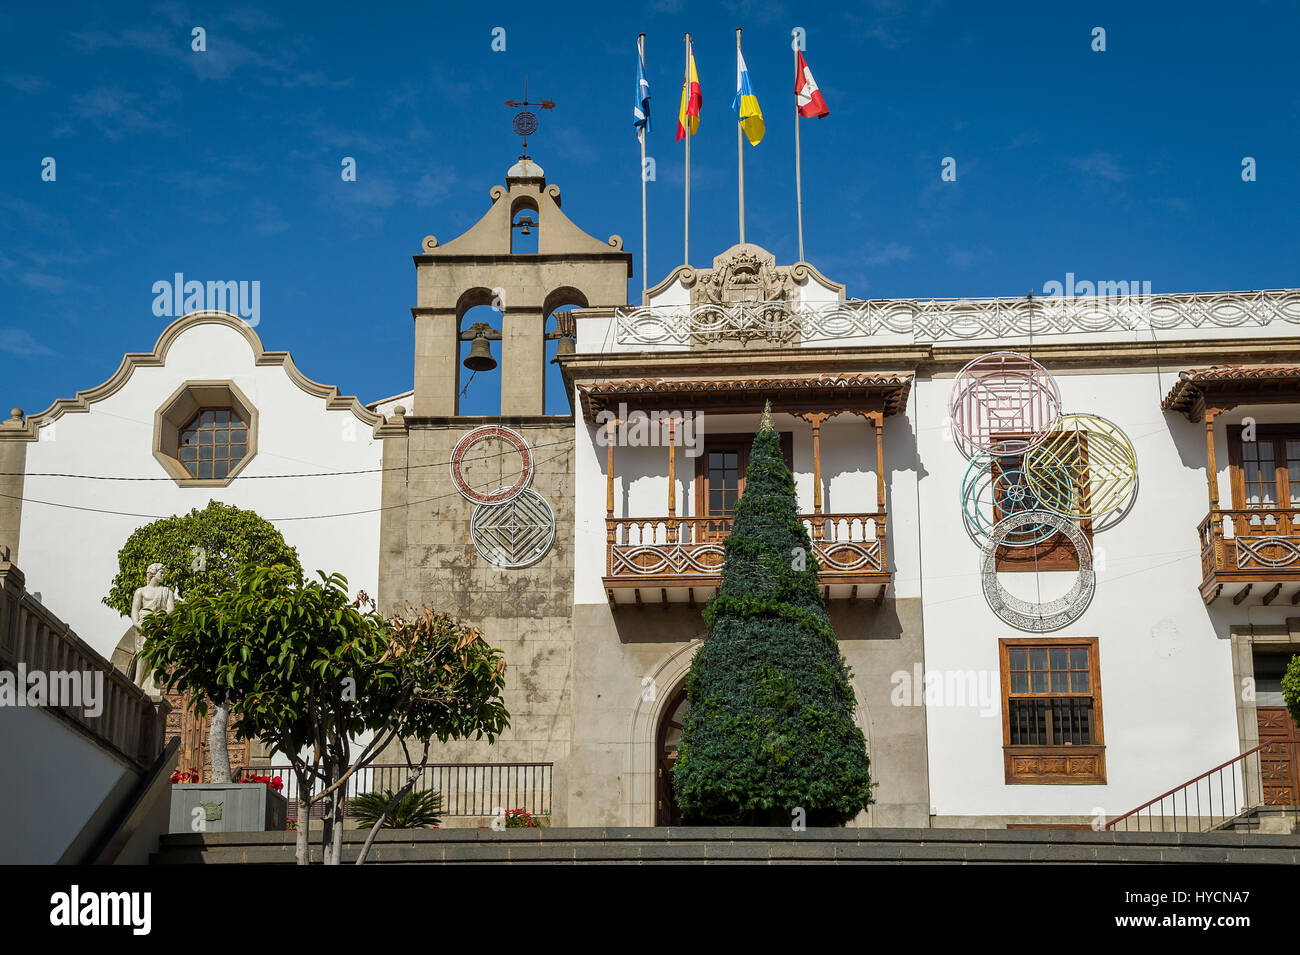 Icod de los Vinos historical center Stock Photo